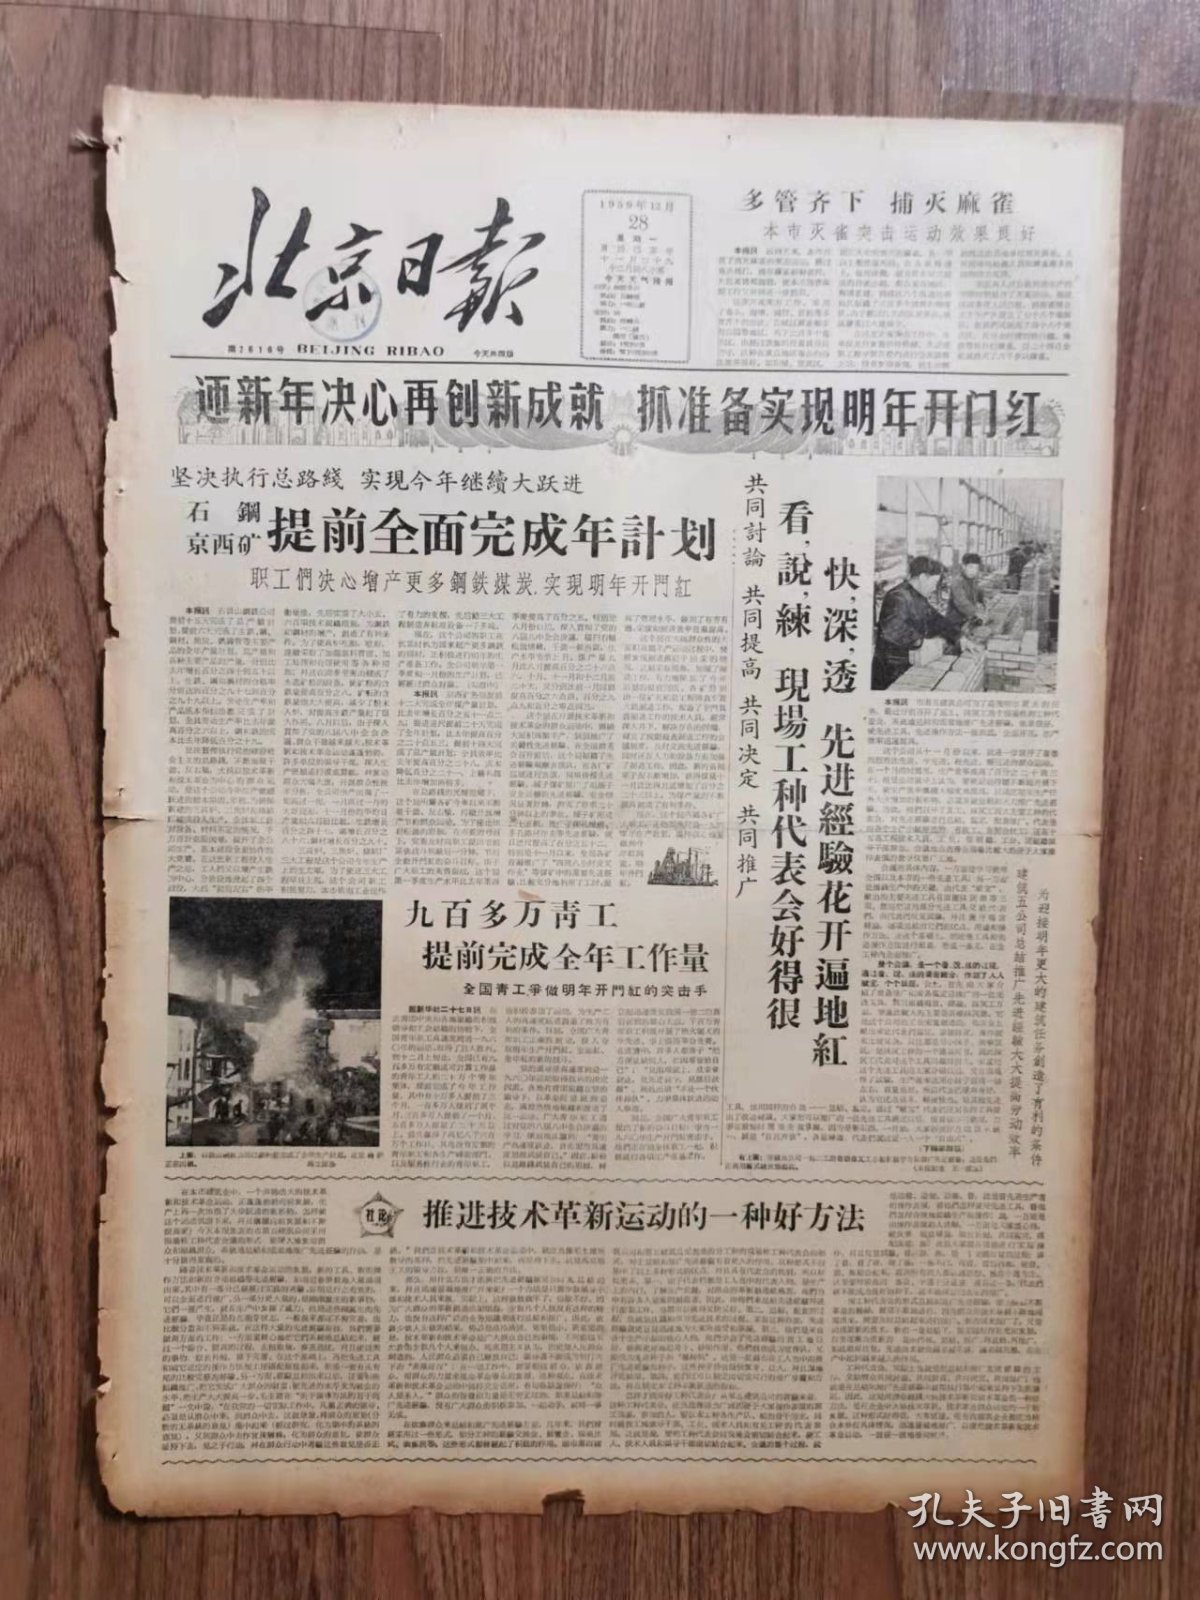 北京日报，1959年12月28日, 丹江口水利枢纽胜利截流
收藏报纸，品相如图